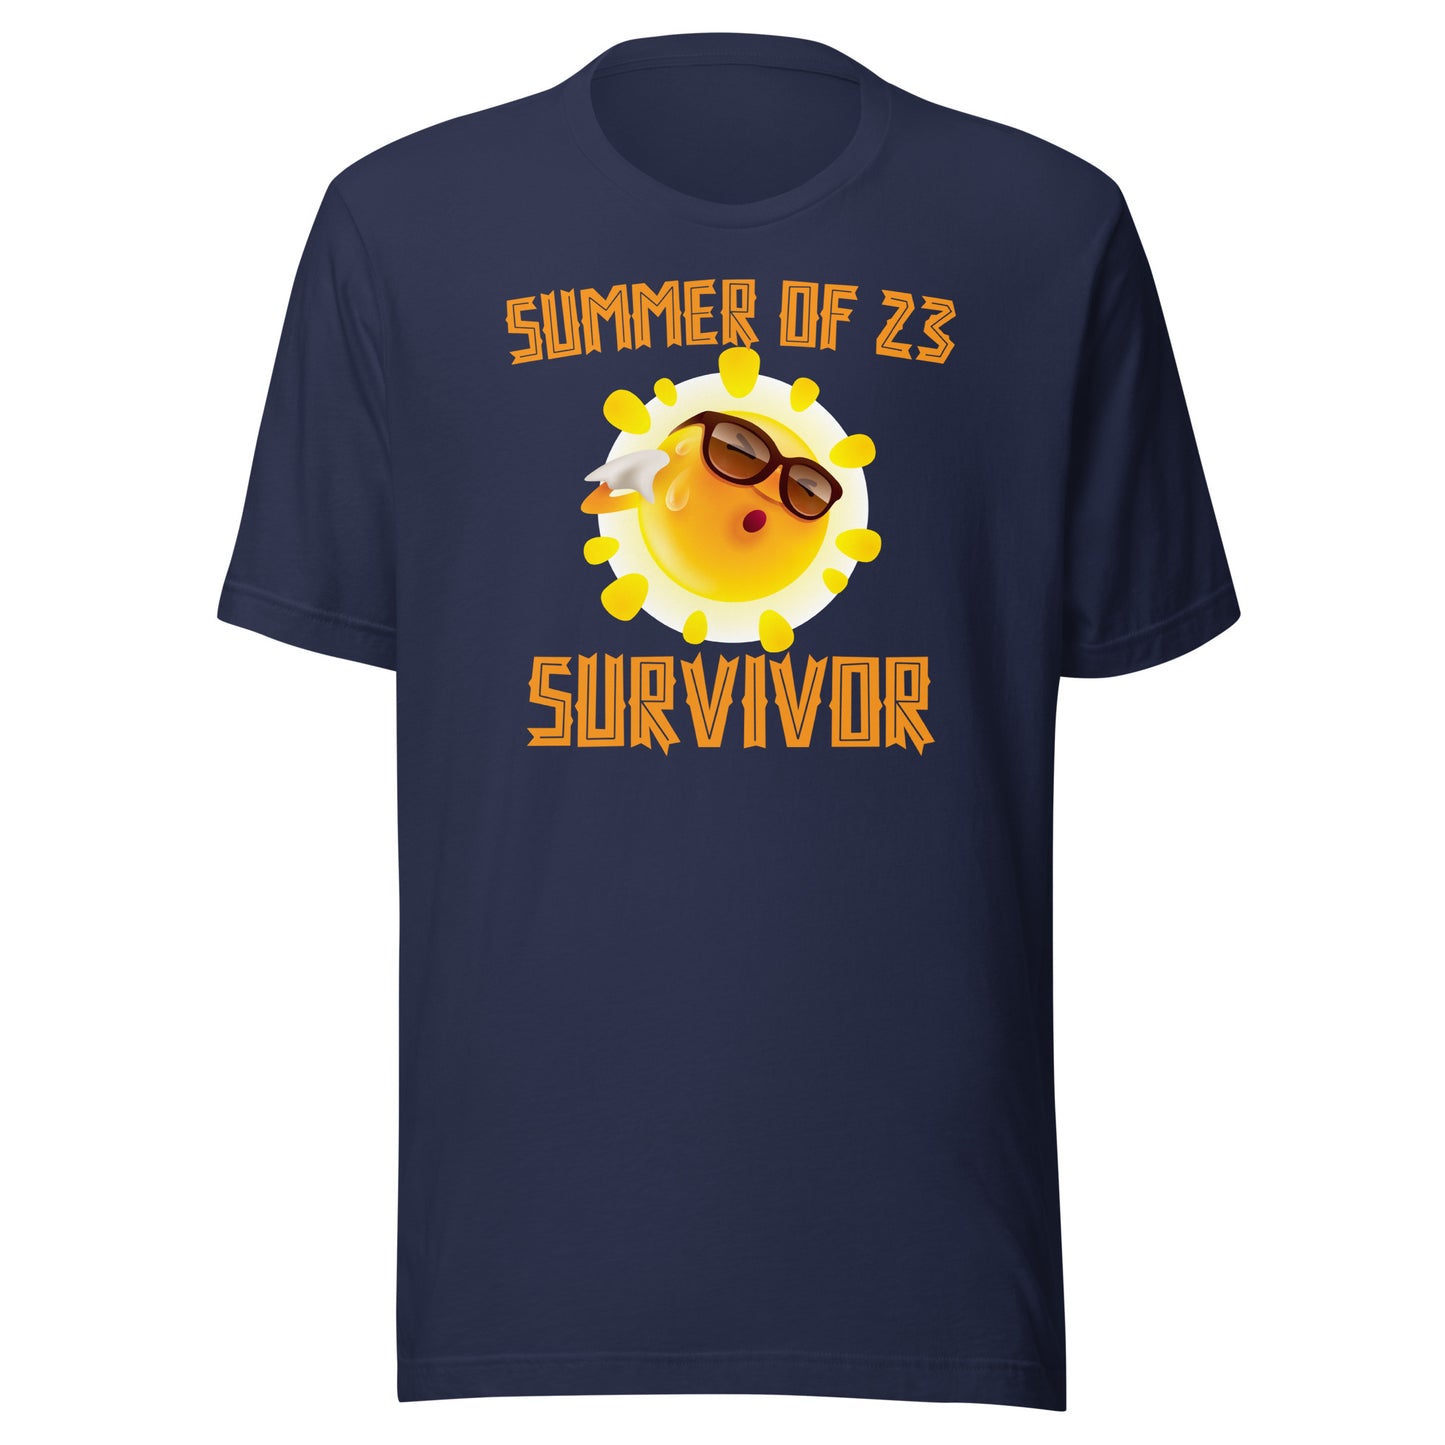 Summer of 23 Survivor